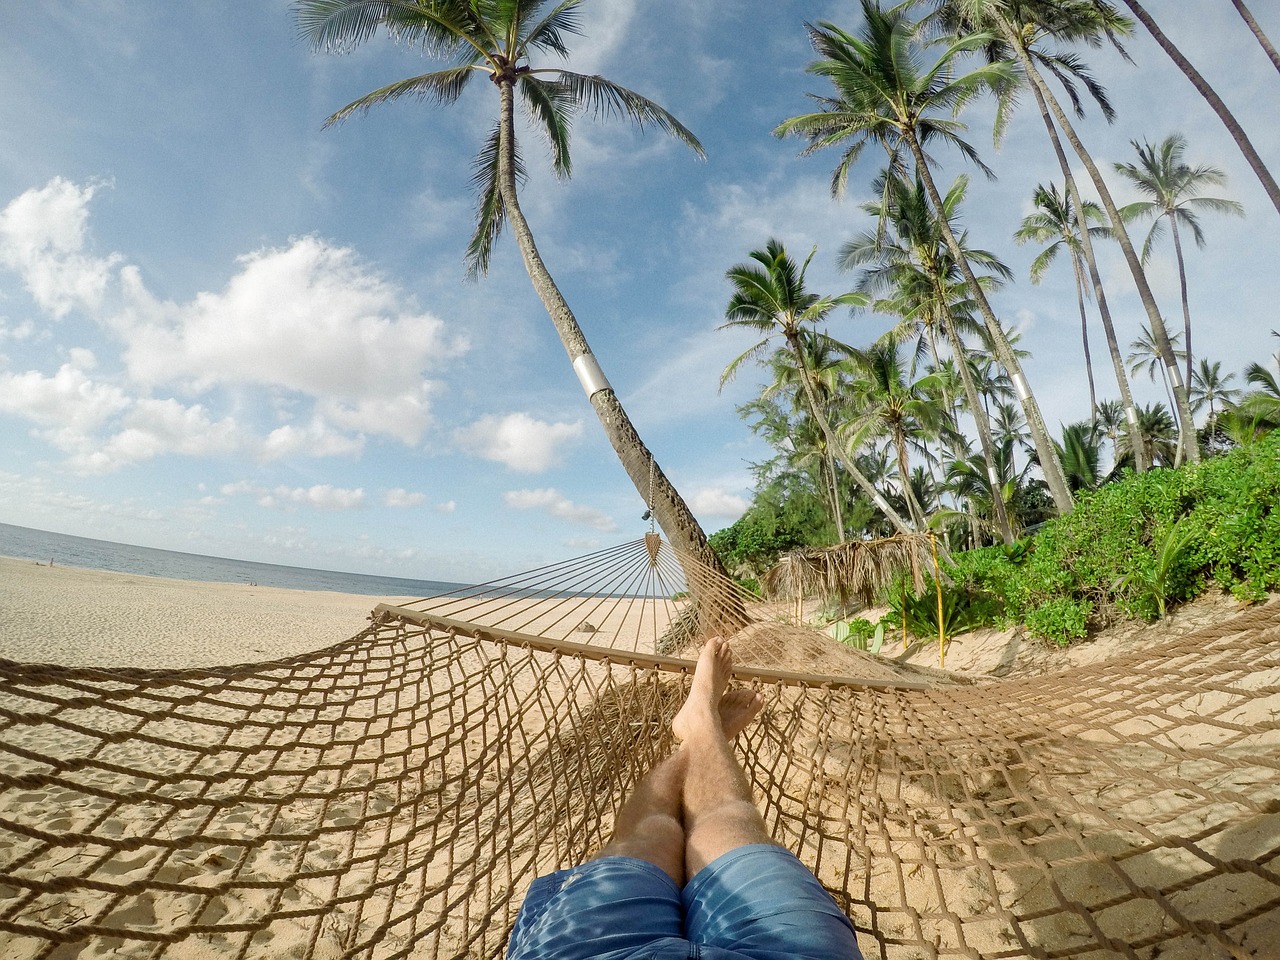 Osoba leži u visećoj mreži na pješčanoj plaži. Okružena je palmama, a u pozadini se vidi more i vedro nebo s pokojim oblakom. Osoba nosi plave kratke hlače, a noge su joj ispružene.